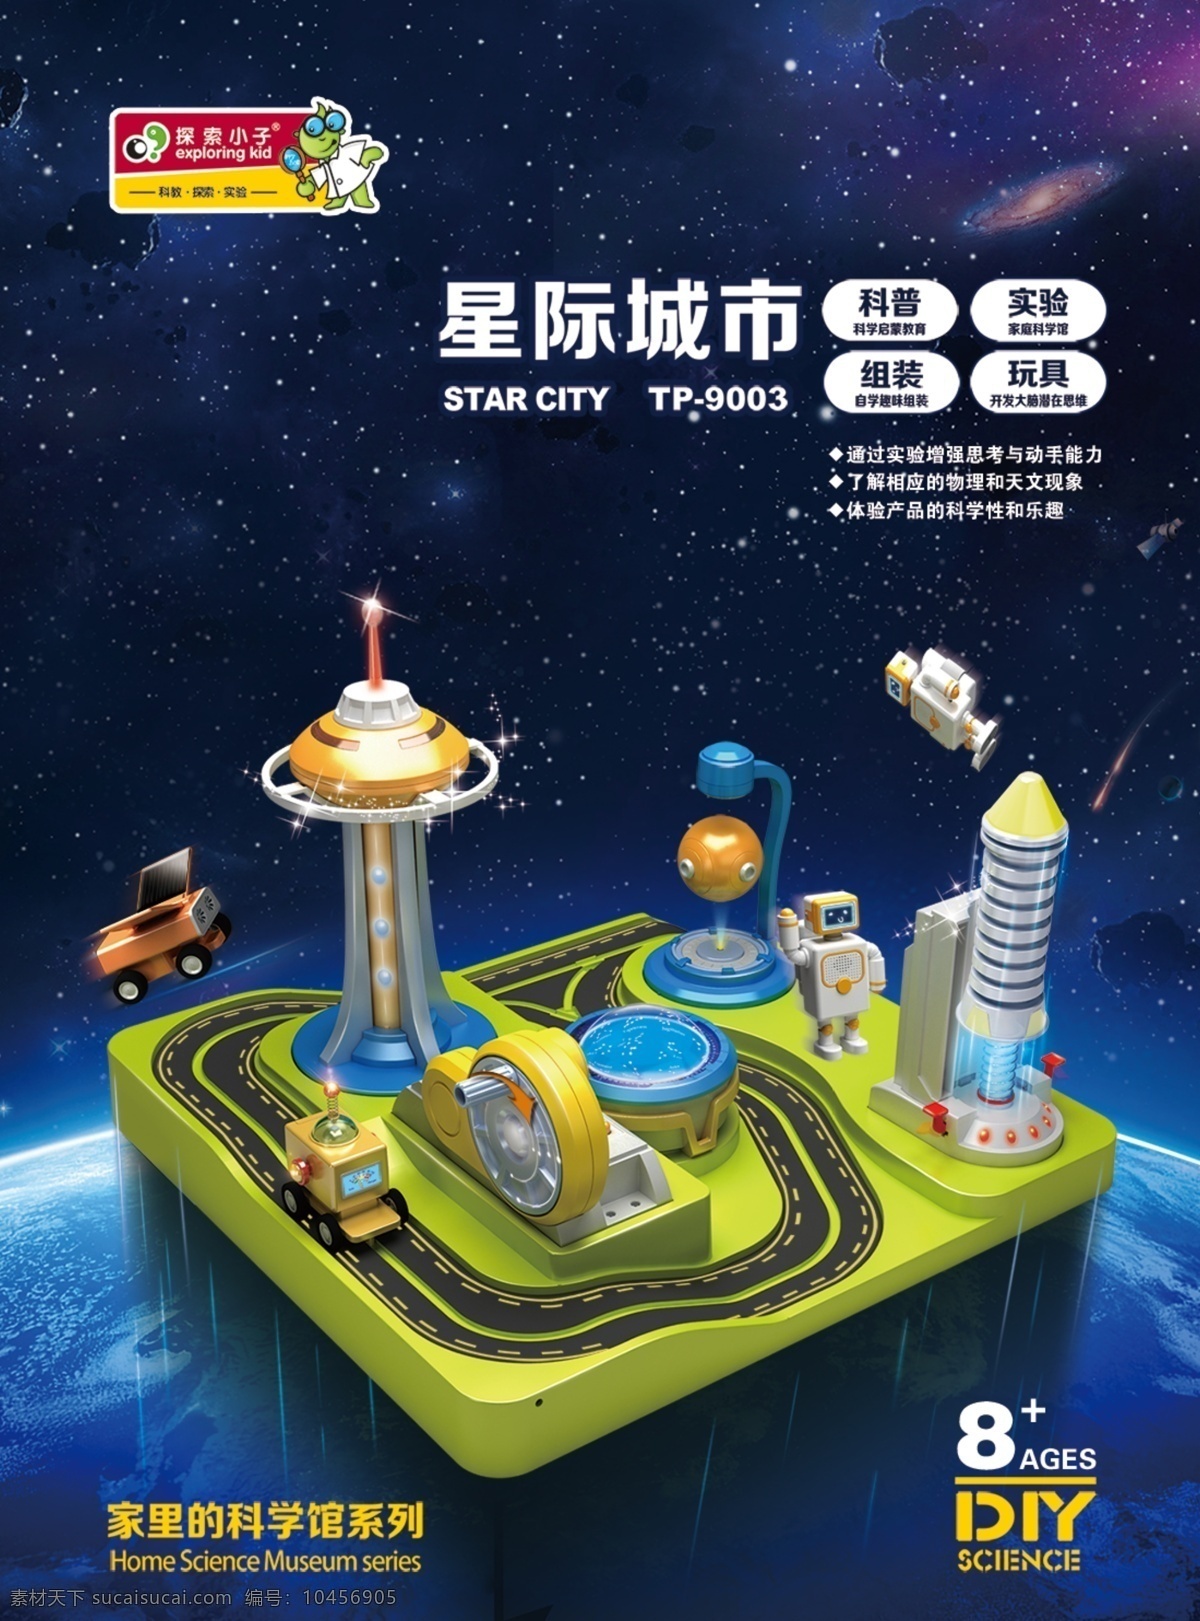 天猫 淘宝 星际 城市 产品 设计图 科普玩具 星际城市玩具 儿童实验模型 太空模型 蓝色背景 星际轨道